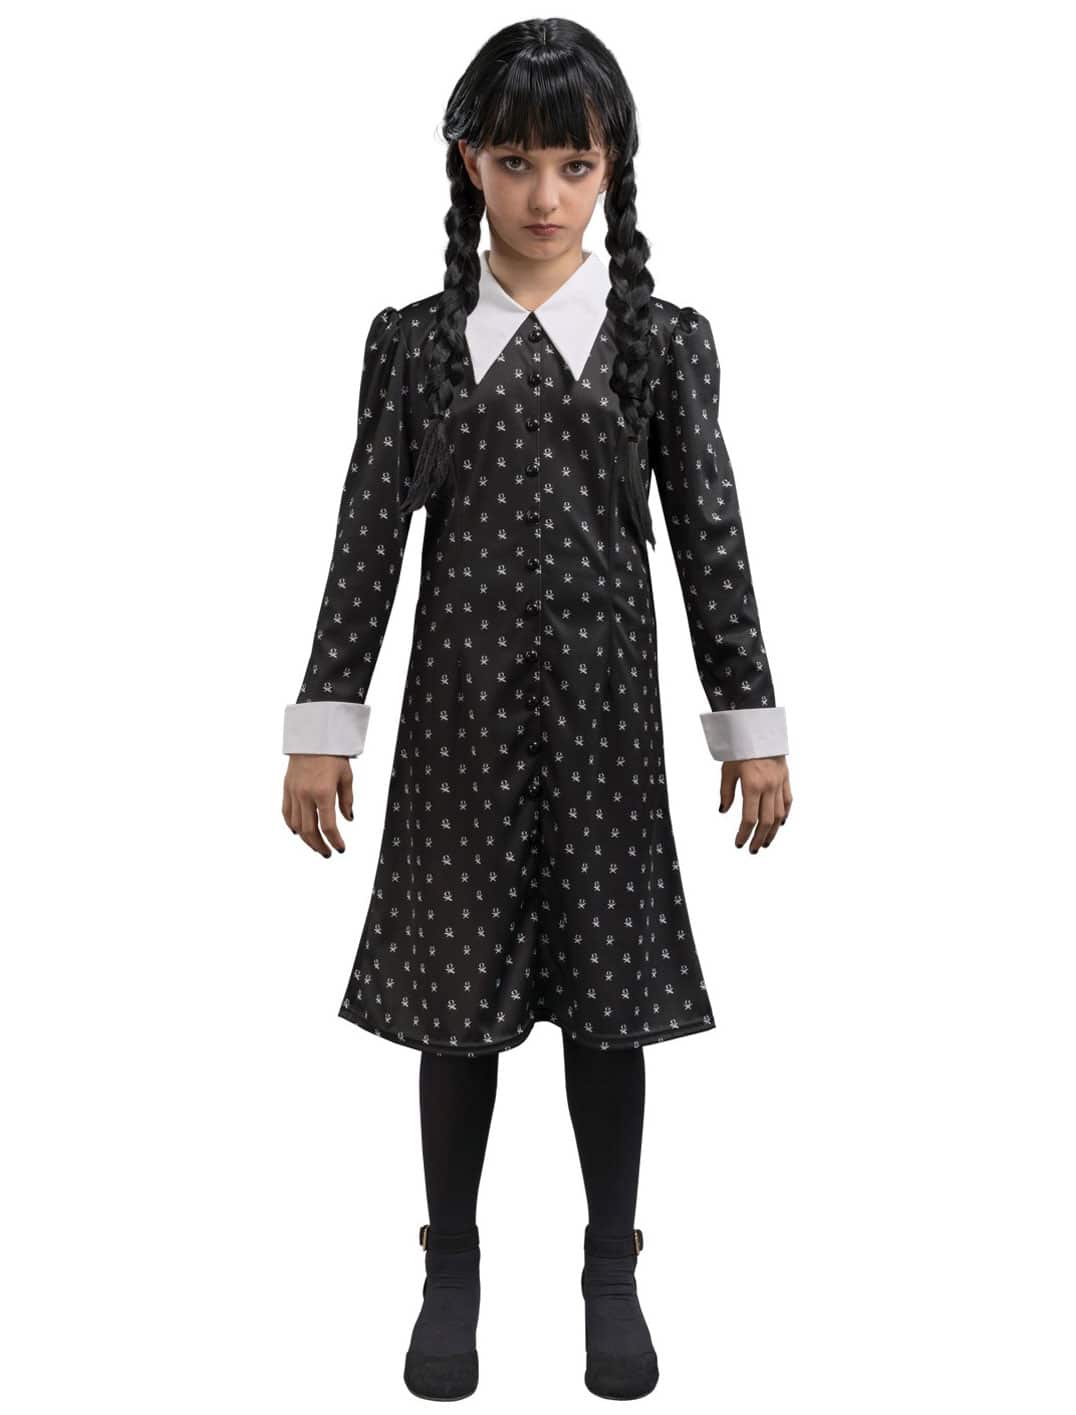 Kleid Wednesday Addams schwarz 164